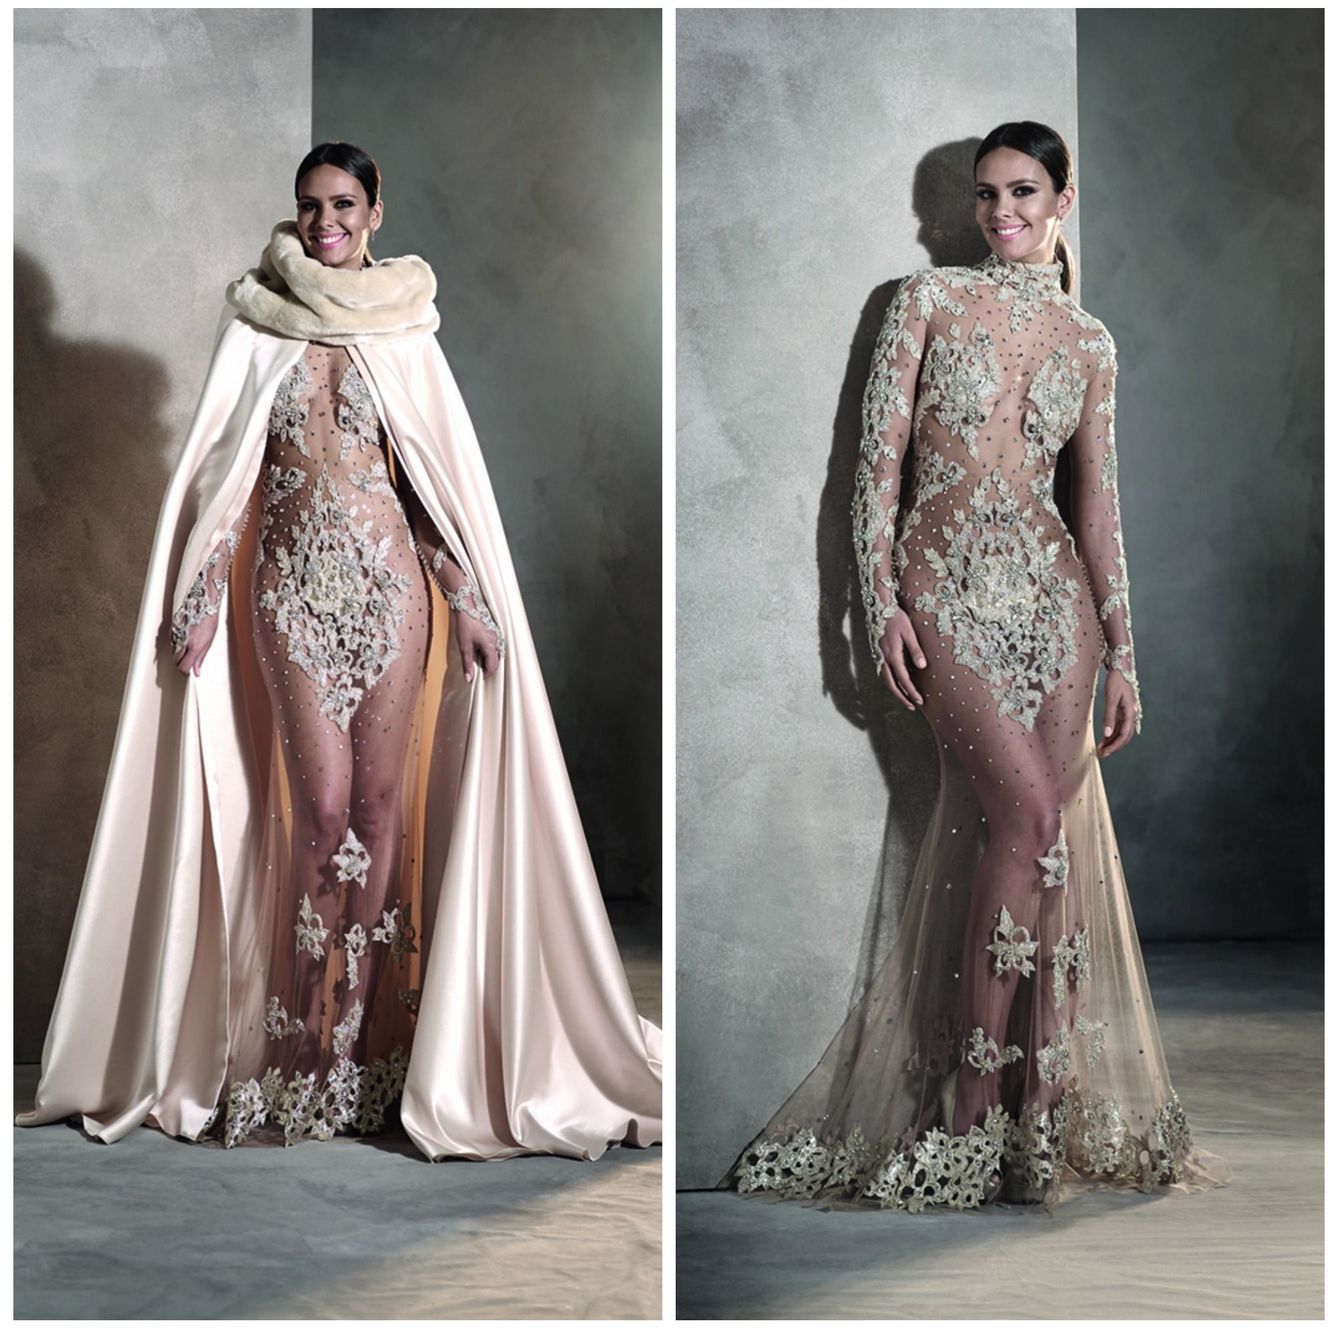 El vestido y la capa de 'Pronovias' que lució Cristina Pedroche.